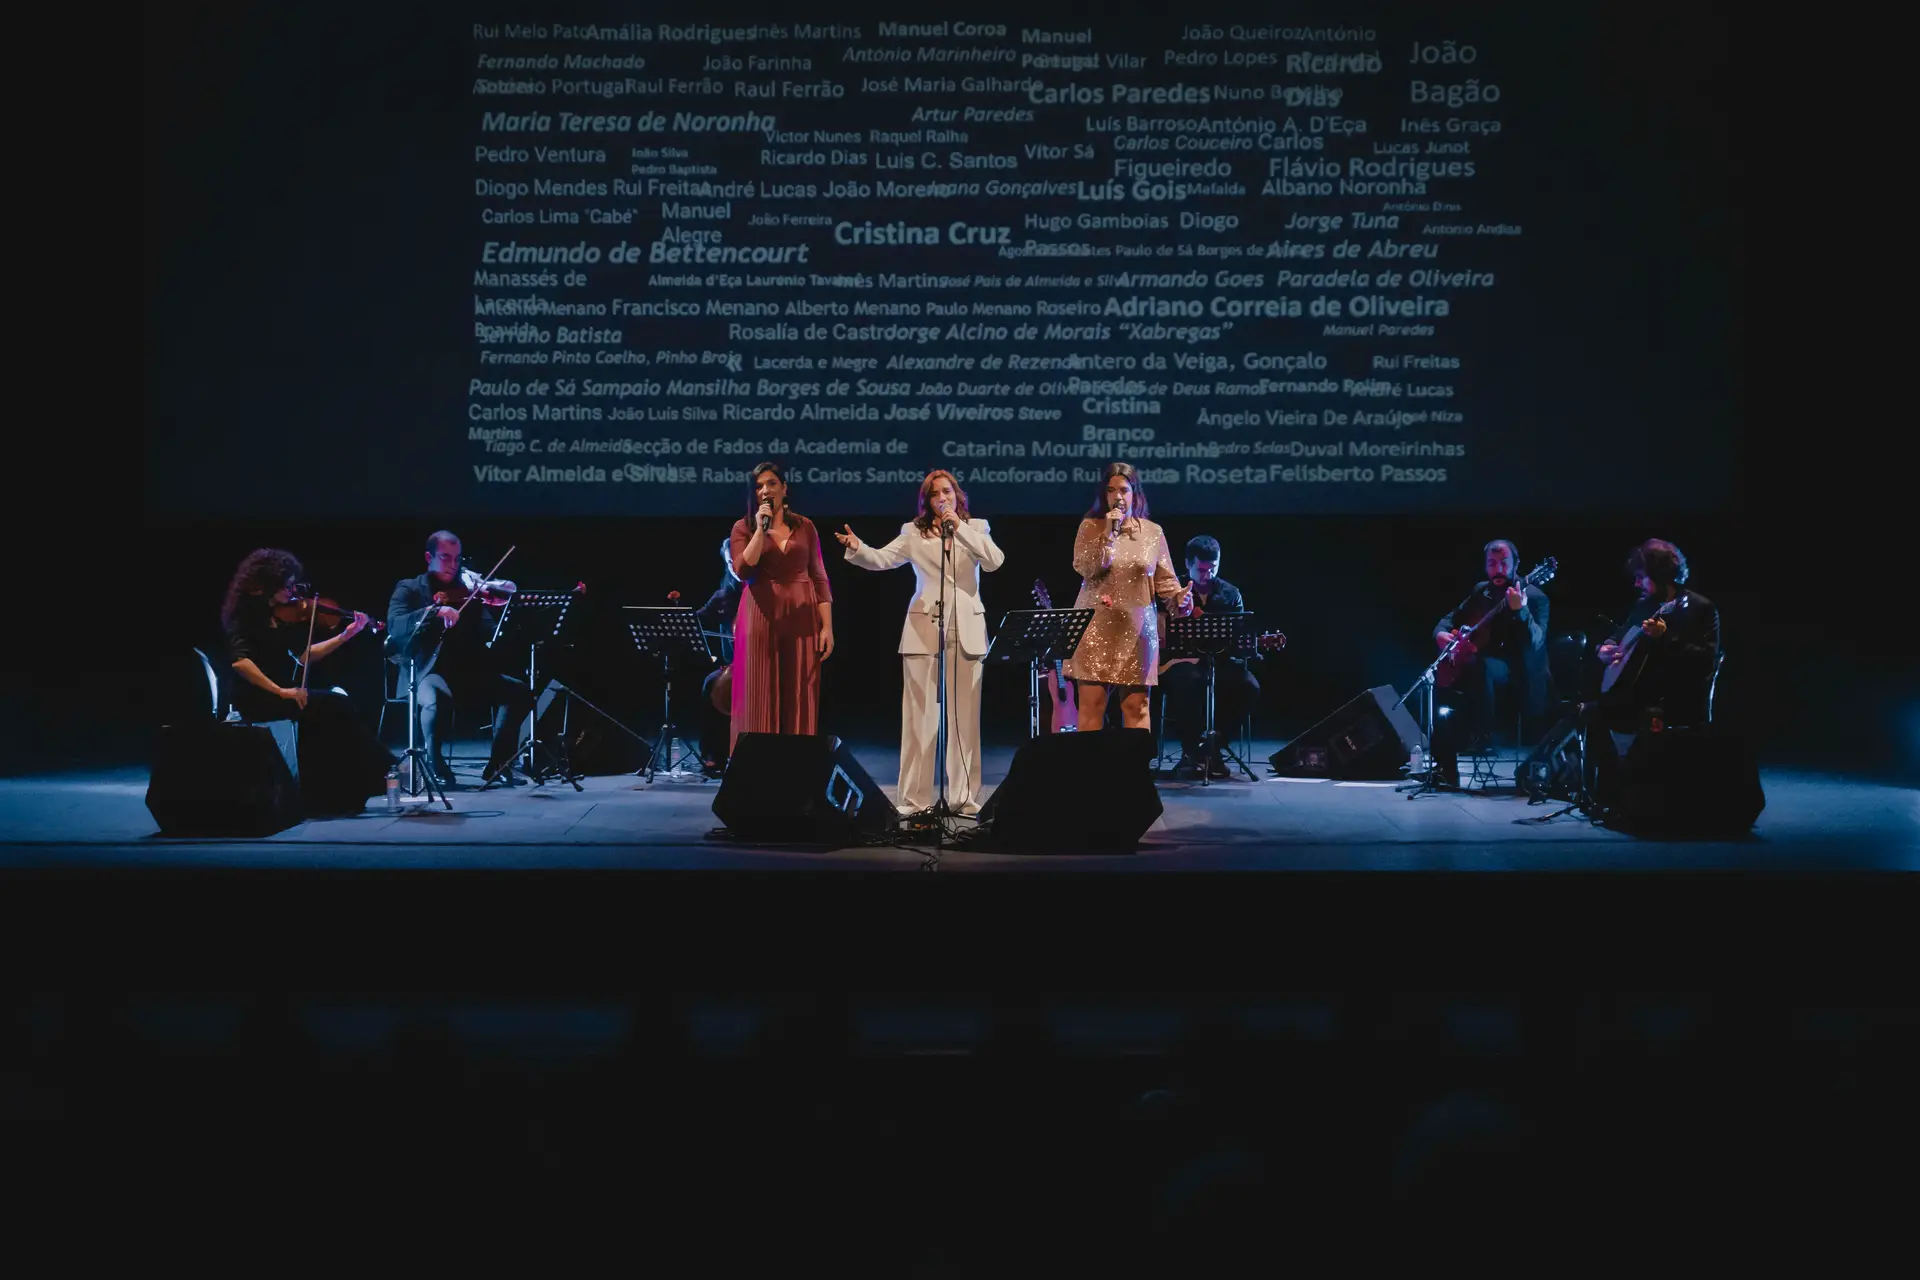 Vânia Couto, Joana Gonçalves e Inês Graça no espetáculo “Coimbra na Voz da Mulher”, que no Teatro Académico Gil Vicente